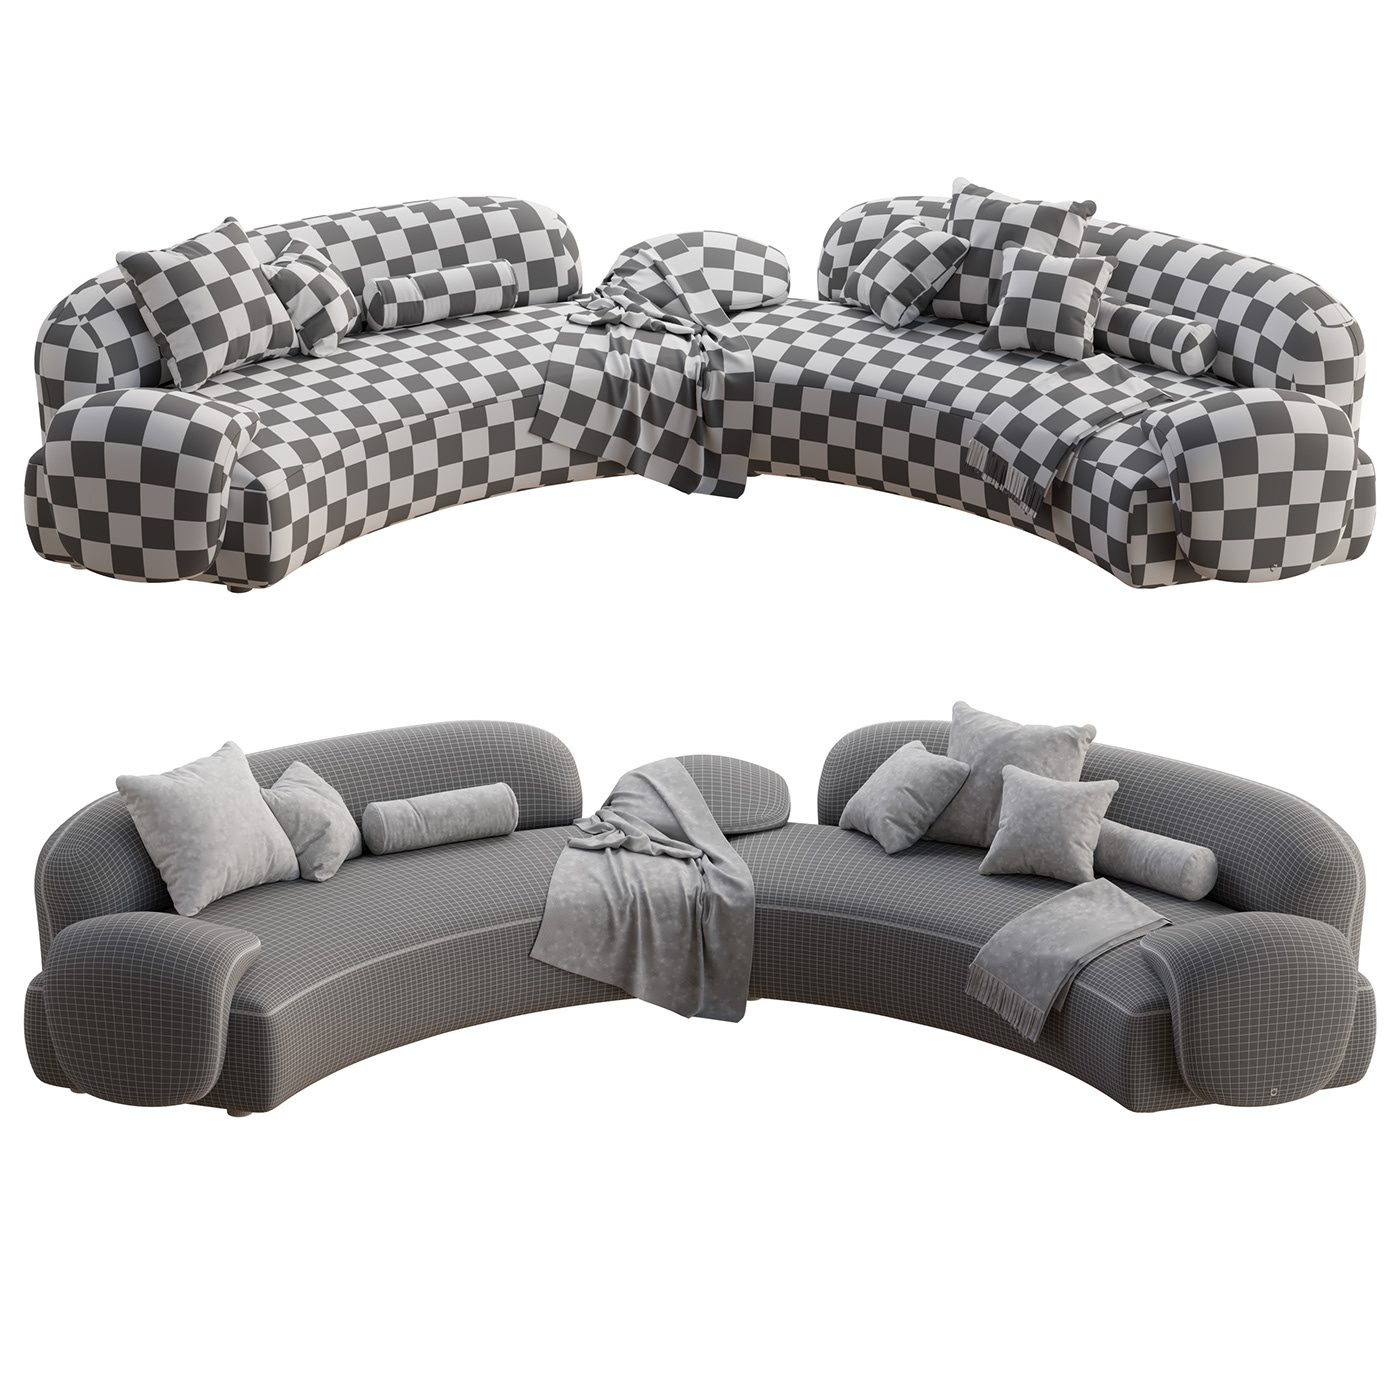 Couch sofa furniture interior design  visualization modern architecture archviz Render